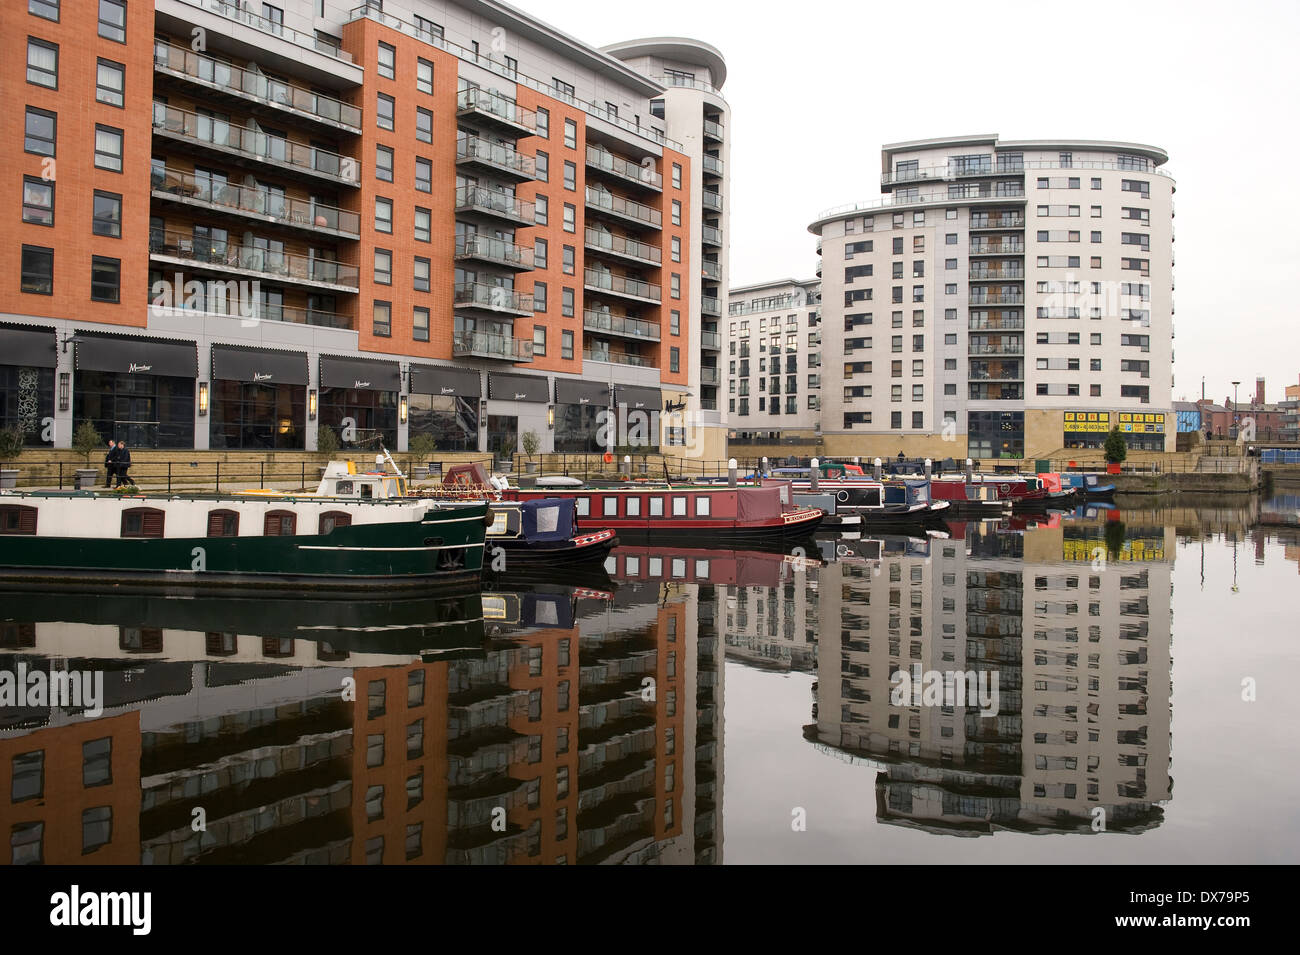 Nouveau Dock (anciennement Clarence Dock) est un développement mixte avec détail, bureaux et présence de loisirs au centre de Leeds, Royaume-Uni. Banque D'Images